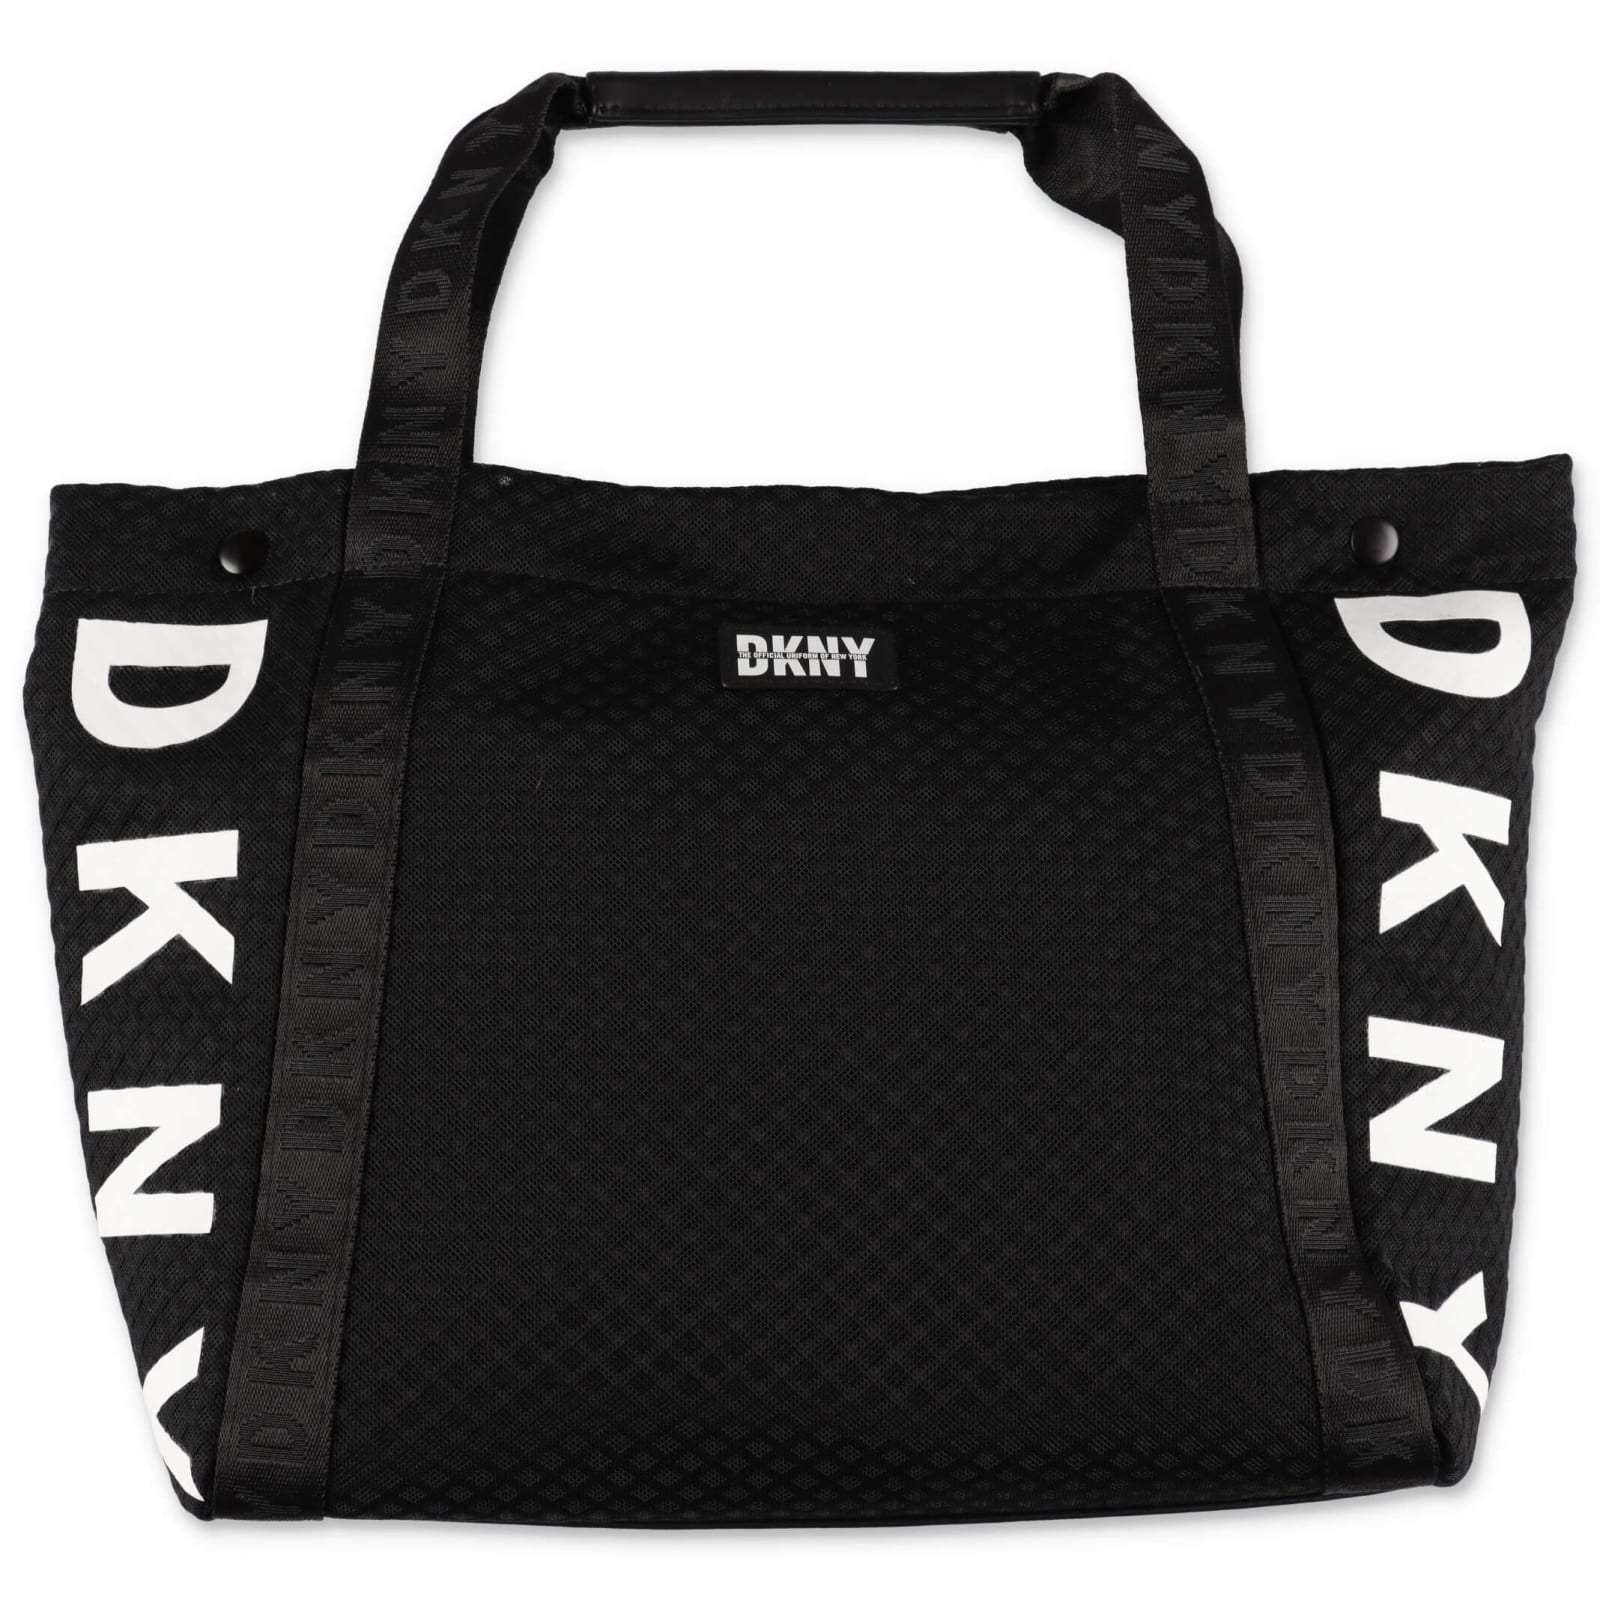 DKNY Accessory